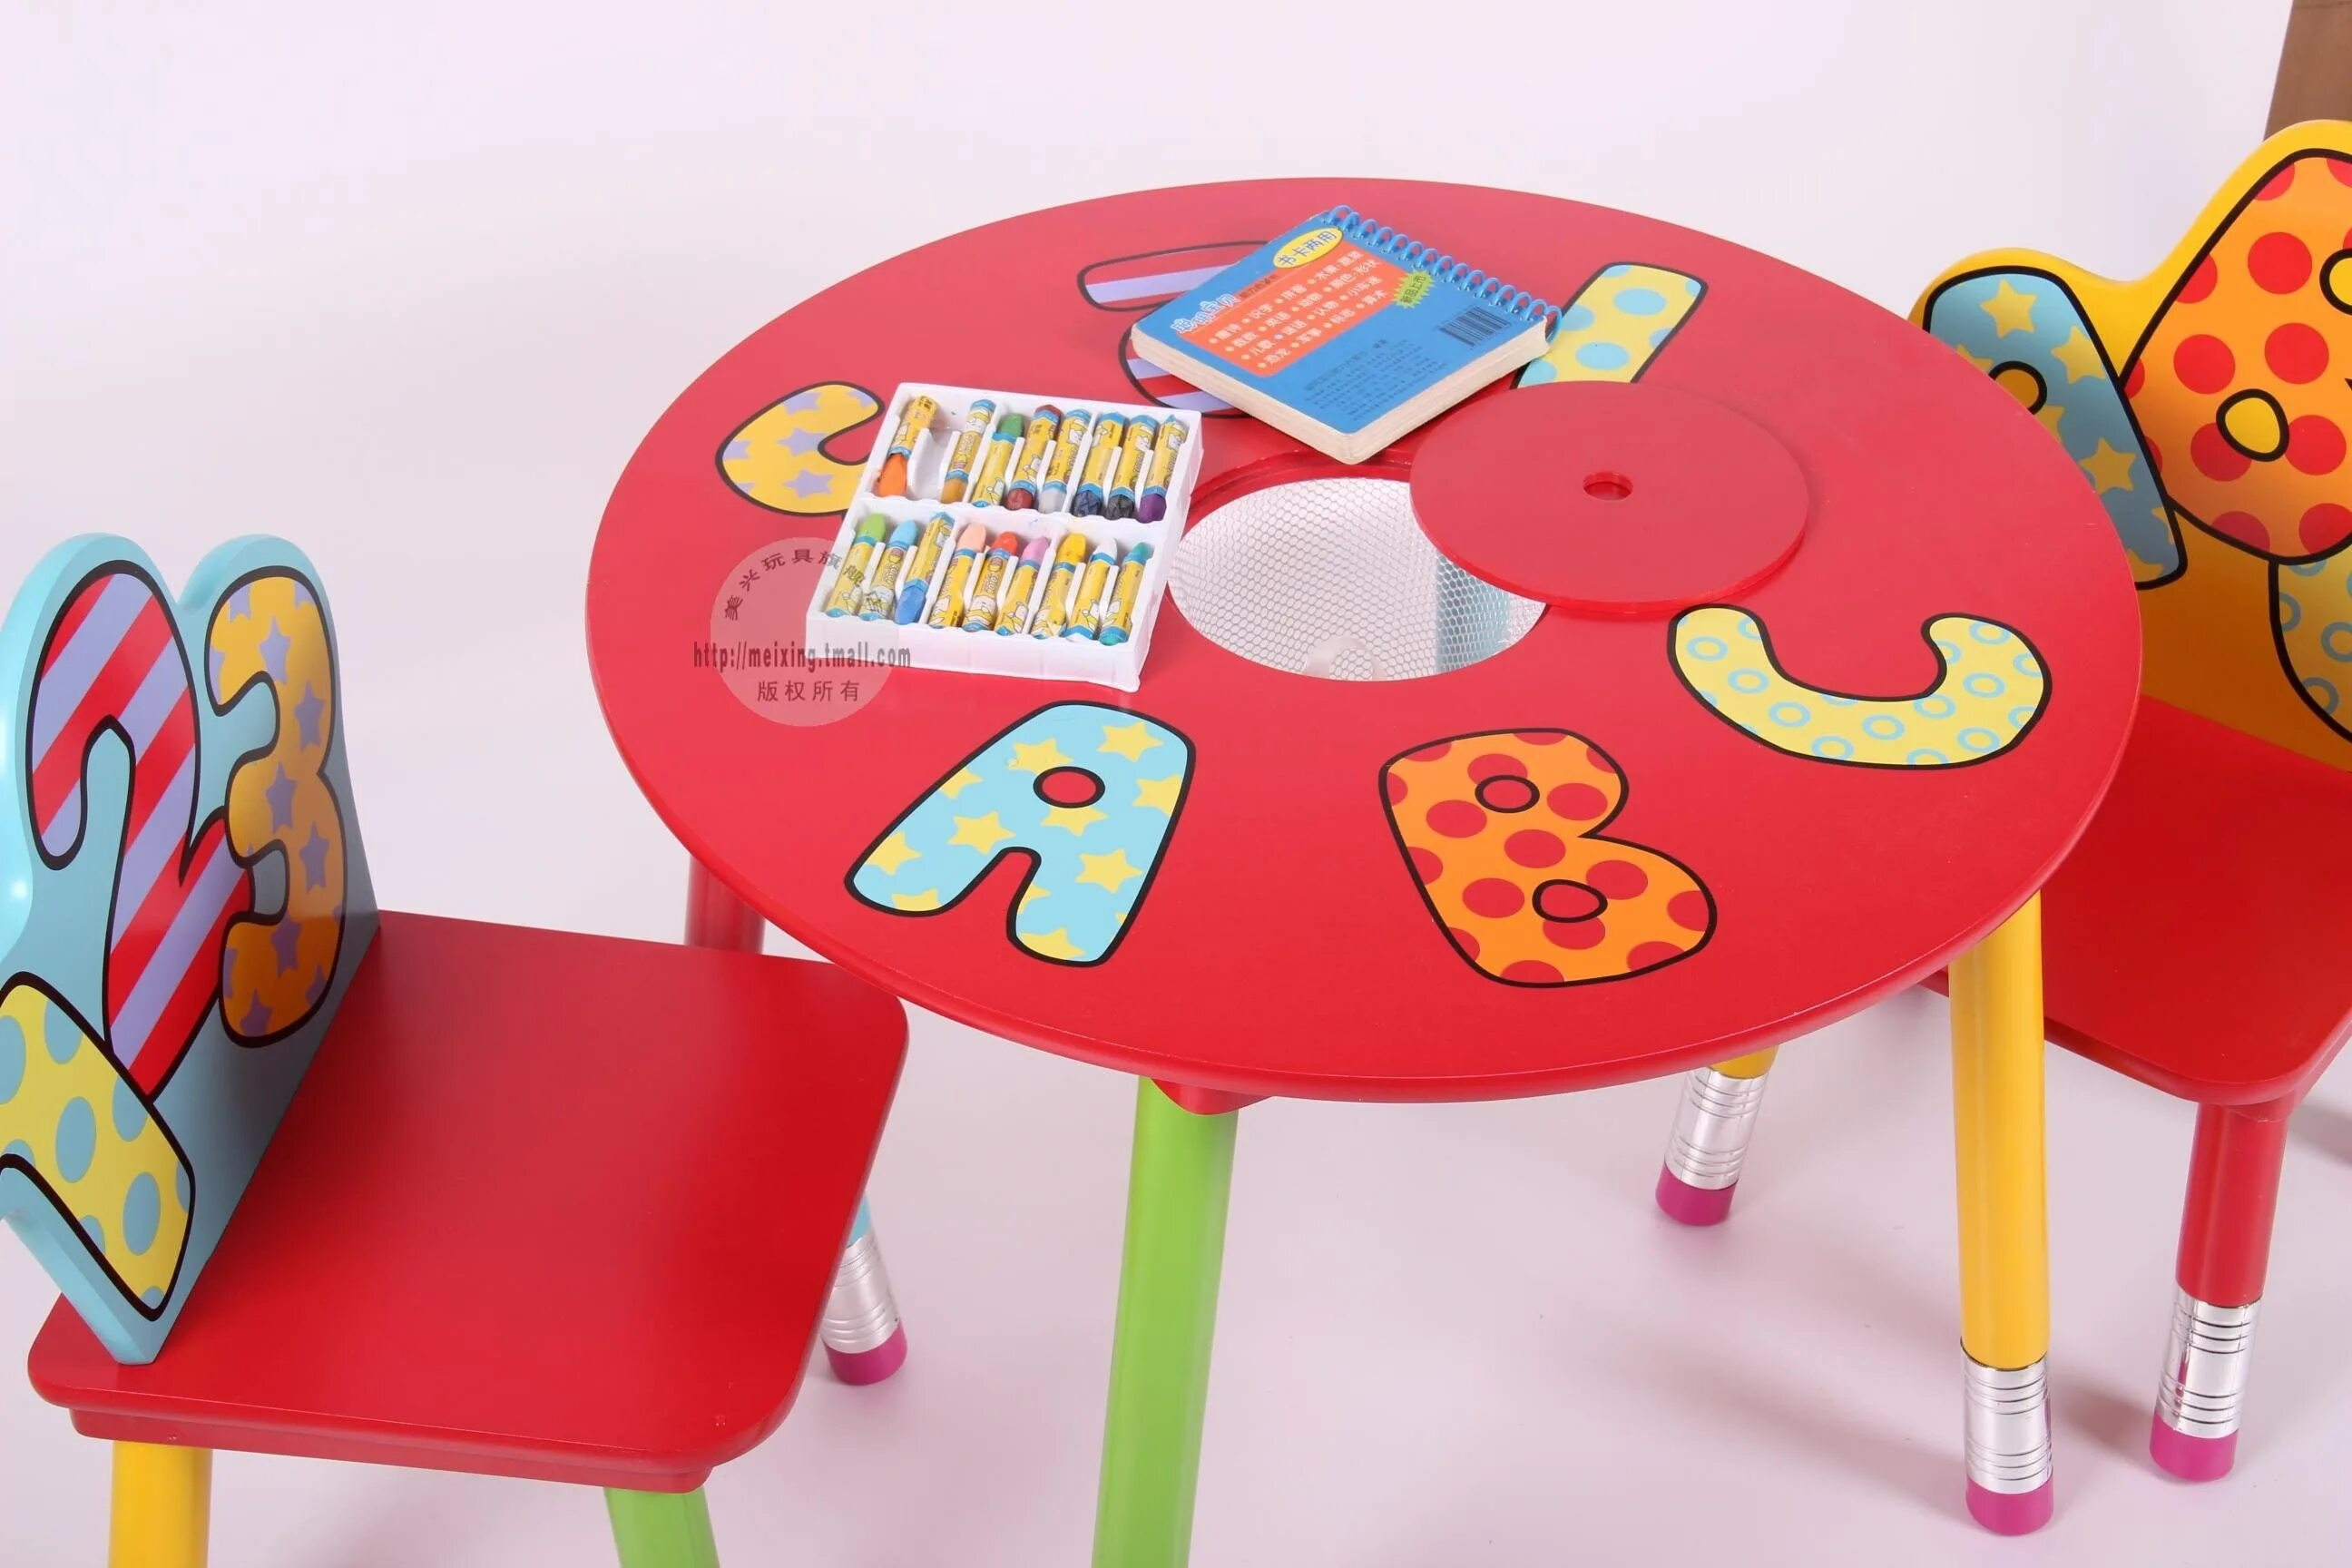 Столик стульчик детский авито. Столик для детей. Столик и стульчик для детей. Детские столы для дошкольников. Столик детский со стульчиками.